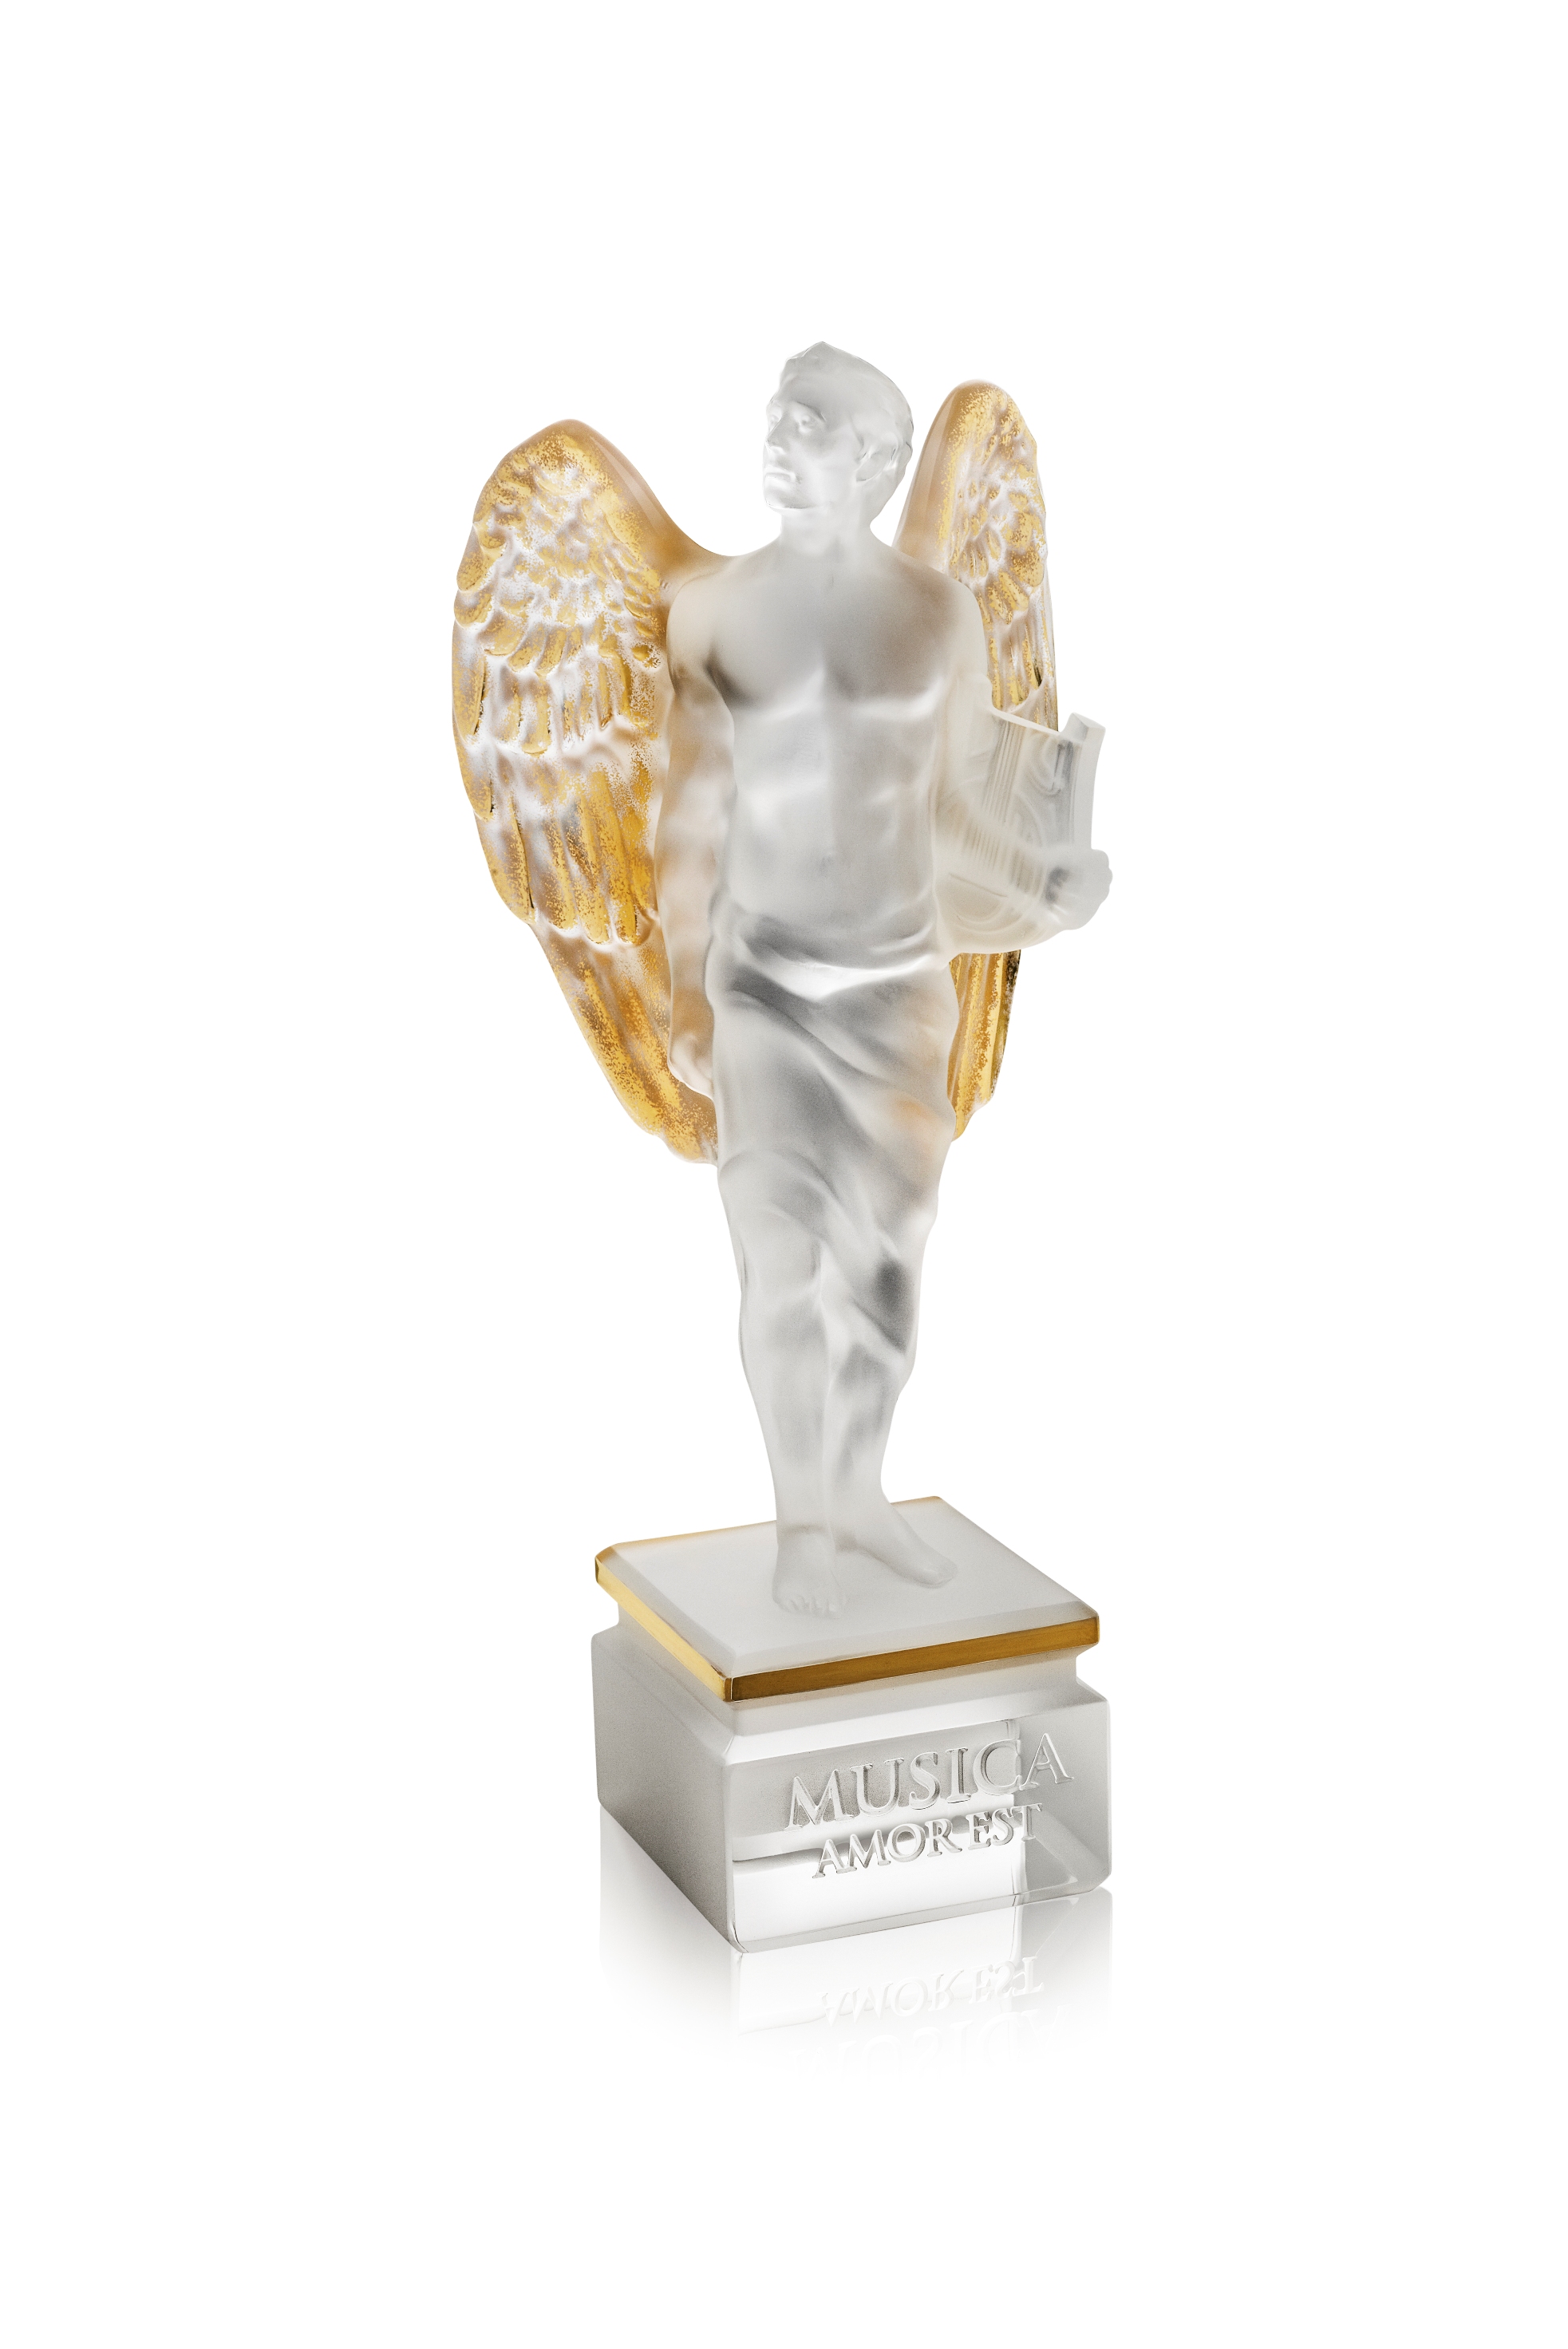 英國歌手艾爾頓強攜手法國水晶品牌LALIQUE打造「愛之天使」_義賣水晶雕刻抗愛滋3.jpg